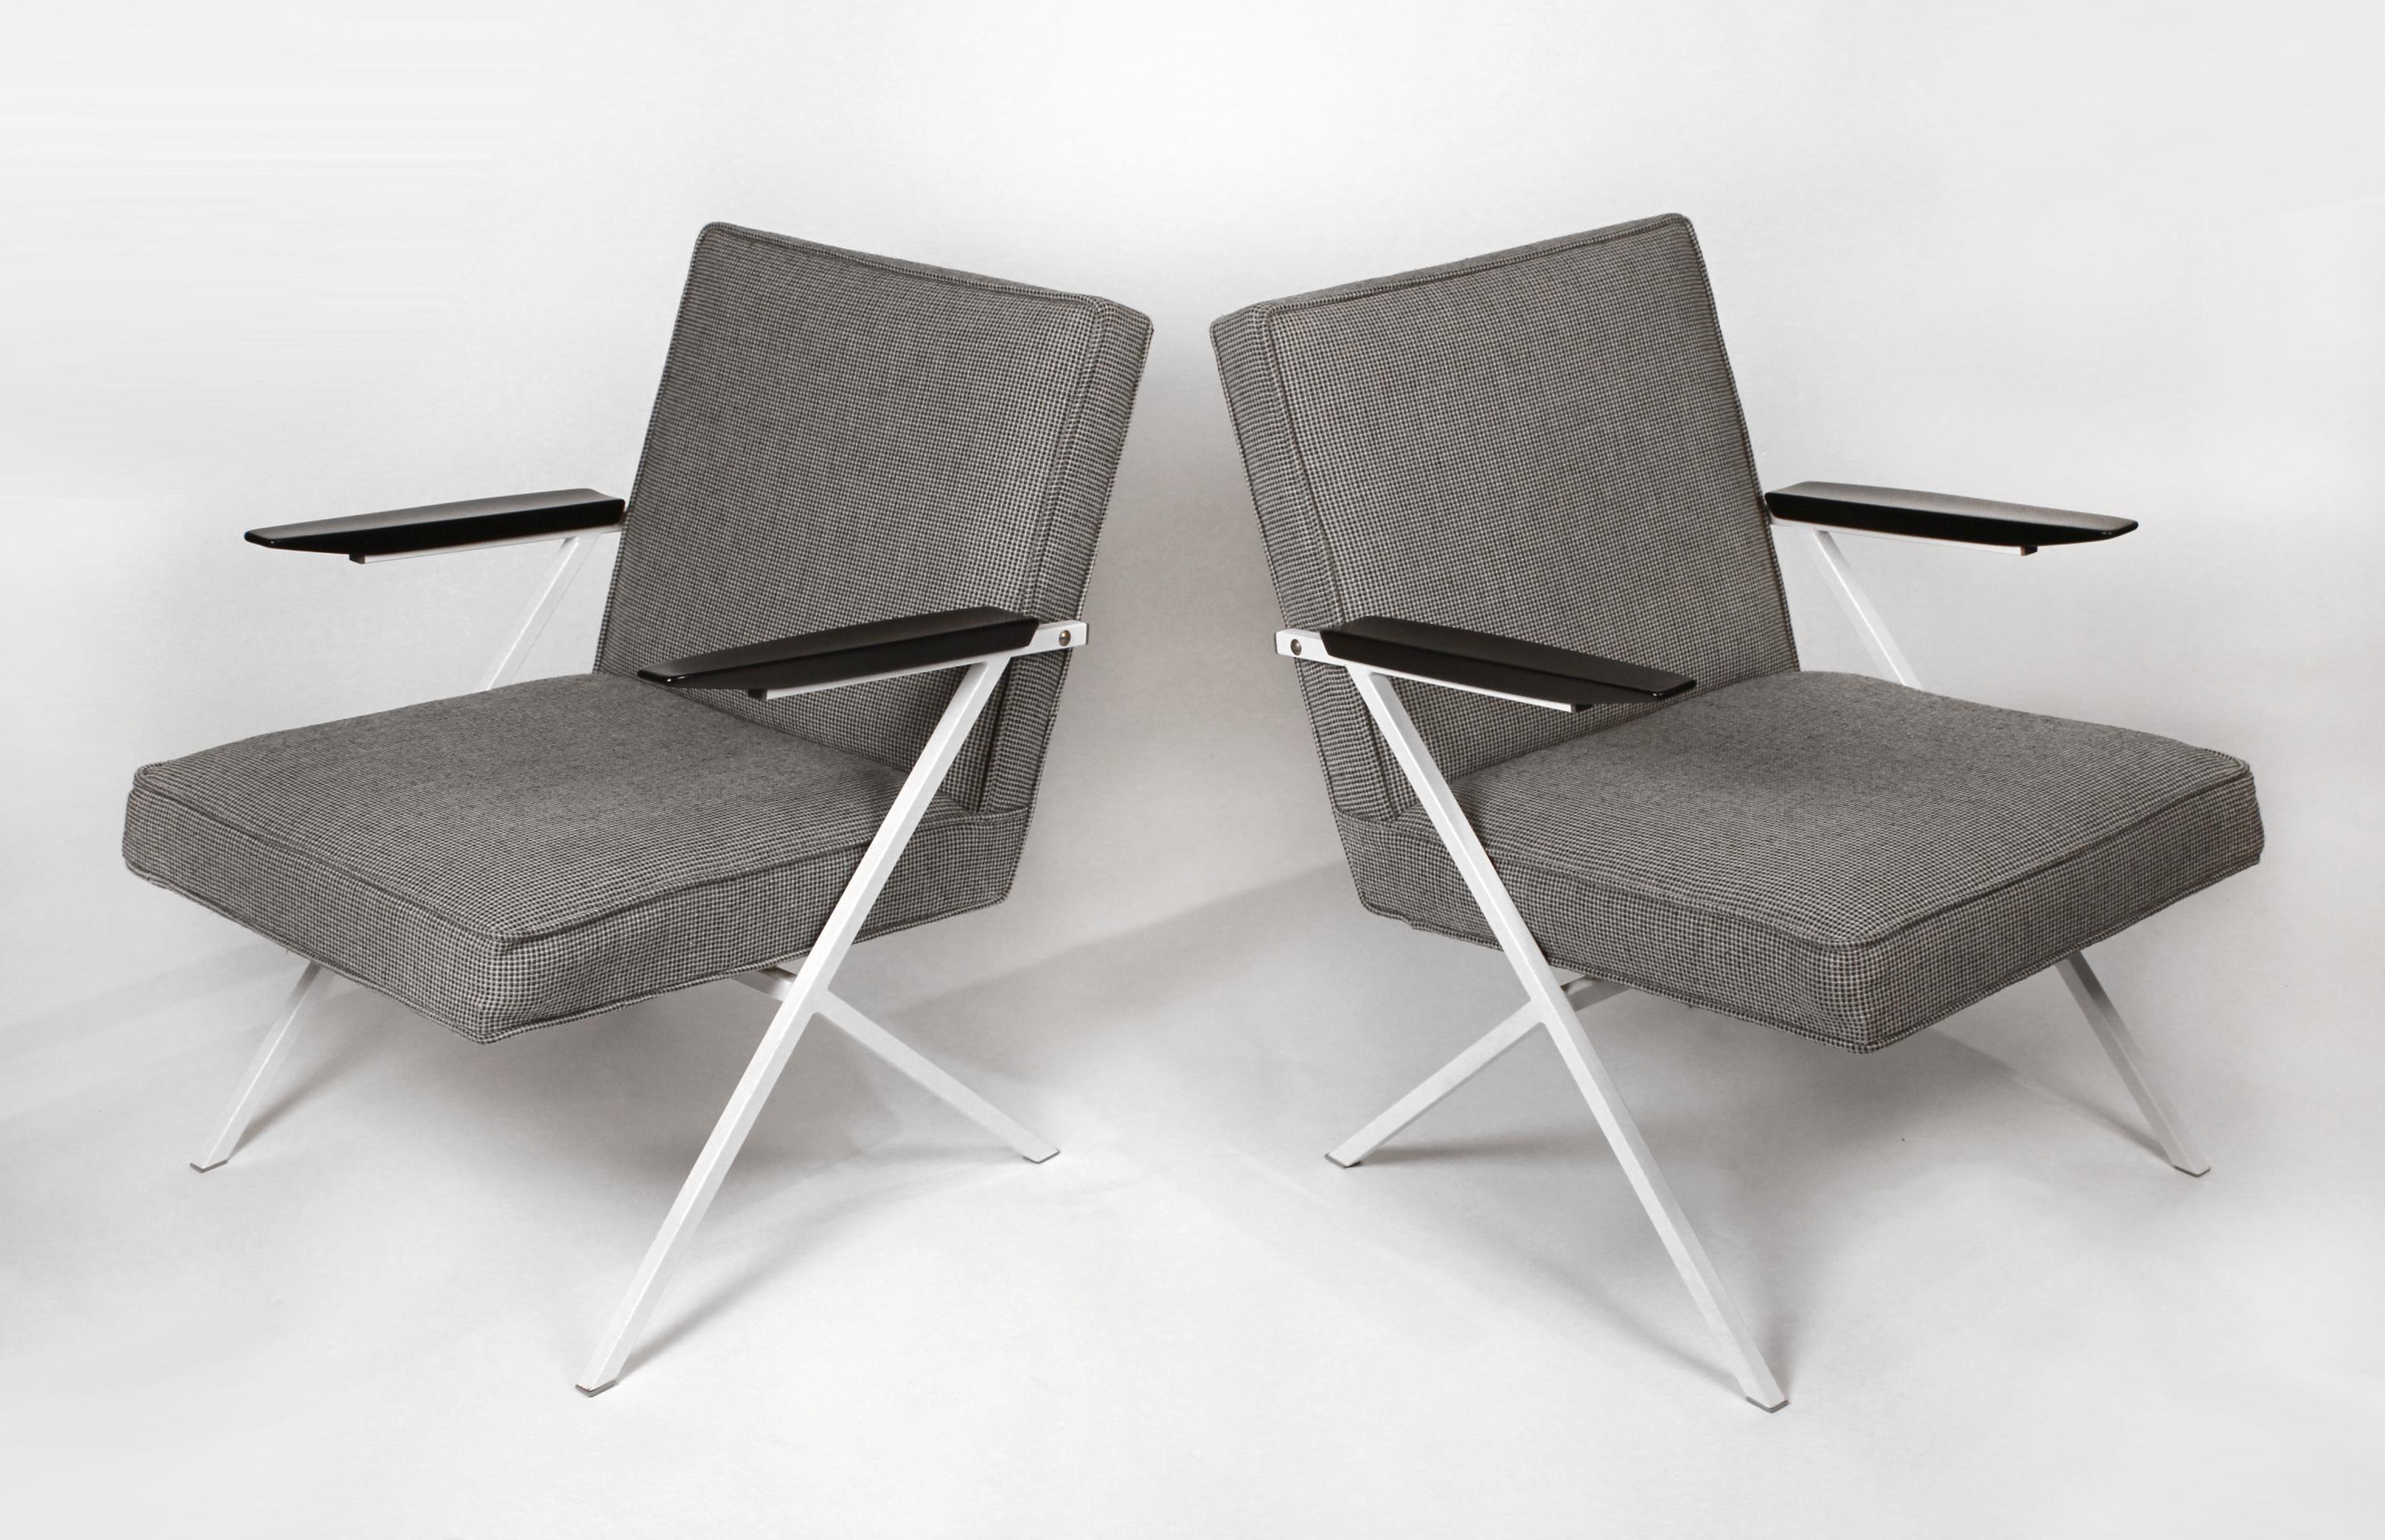 Rare paire de chaises longues conçue par l'architecte tchécoslovaque Ladislav Rado pour Knoll et Drake en 1950. Modèle R-83.

Les cadres ont été re-lacqués. La tapisserie Knoll Tweed est entièrement d'origine.